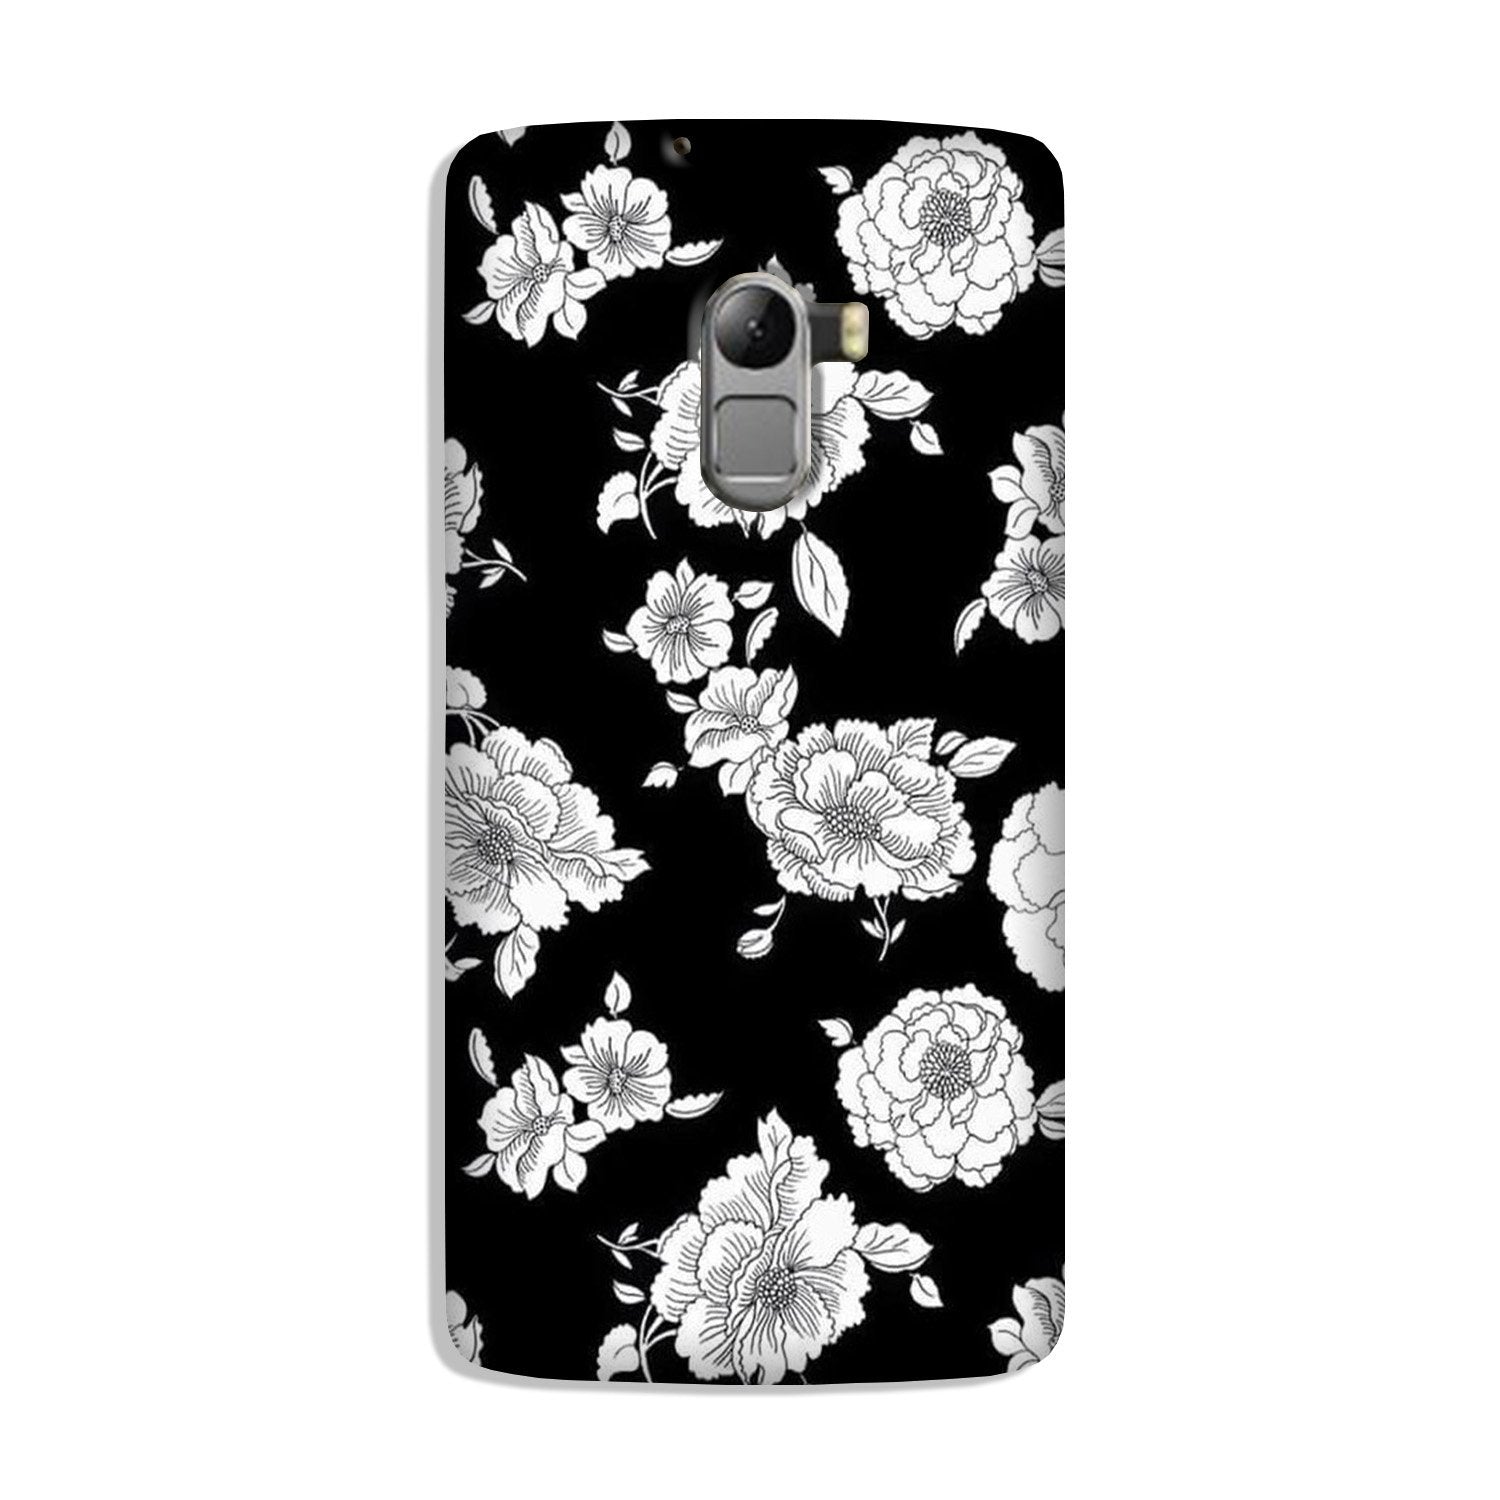 White flowers Black Background Case for Lenovo K4 Note